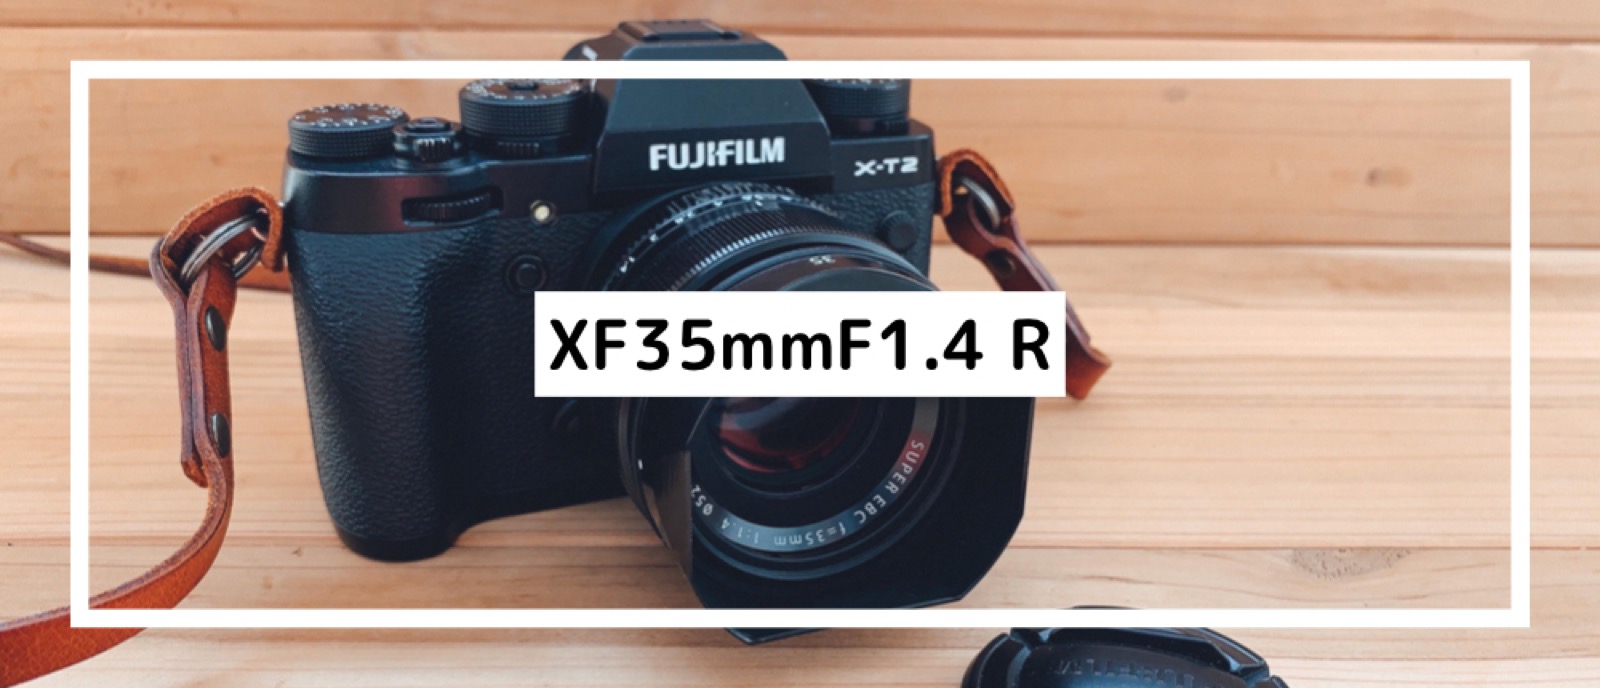 FUJIFILM XF35mmF1.4R